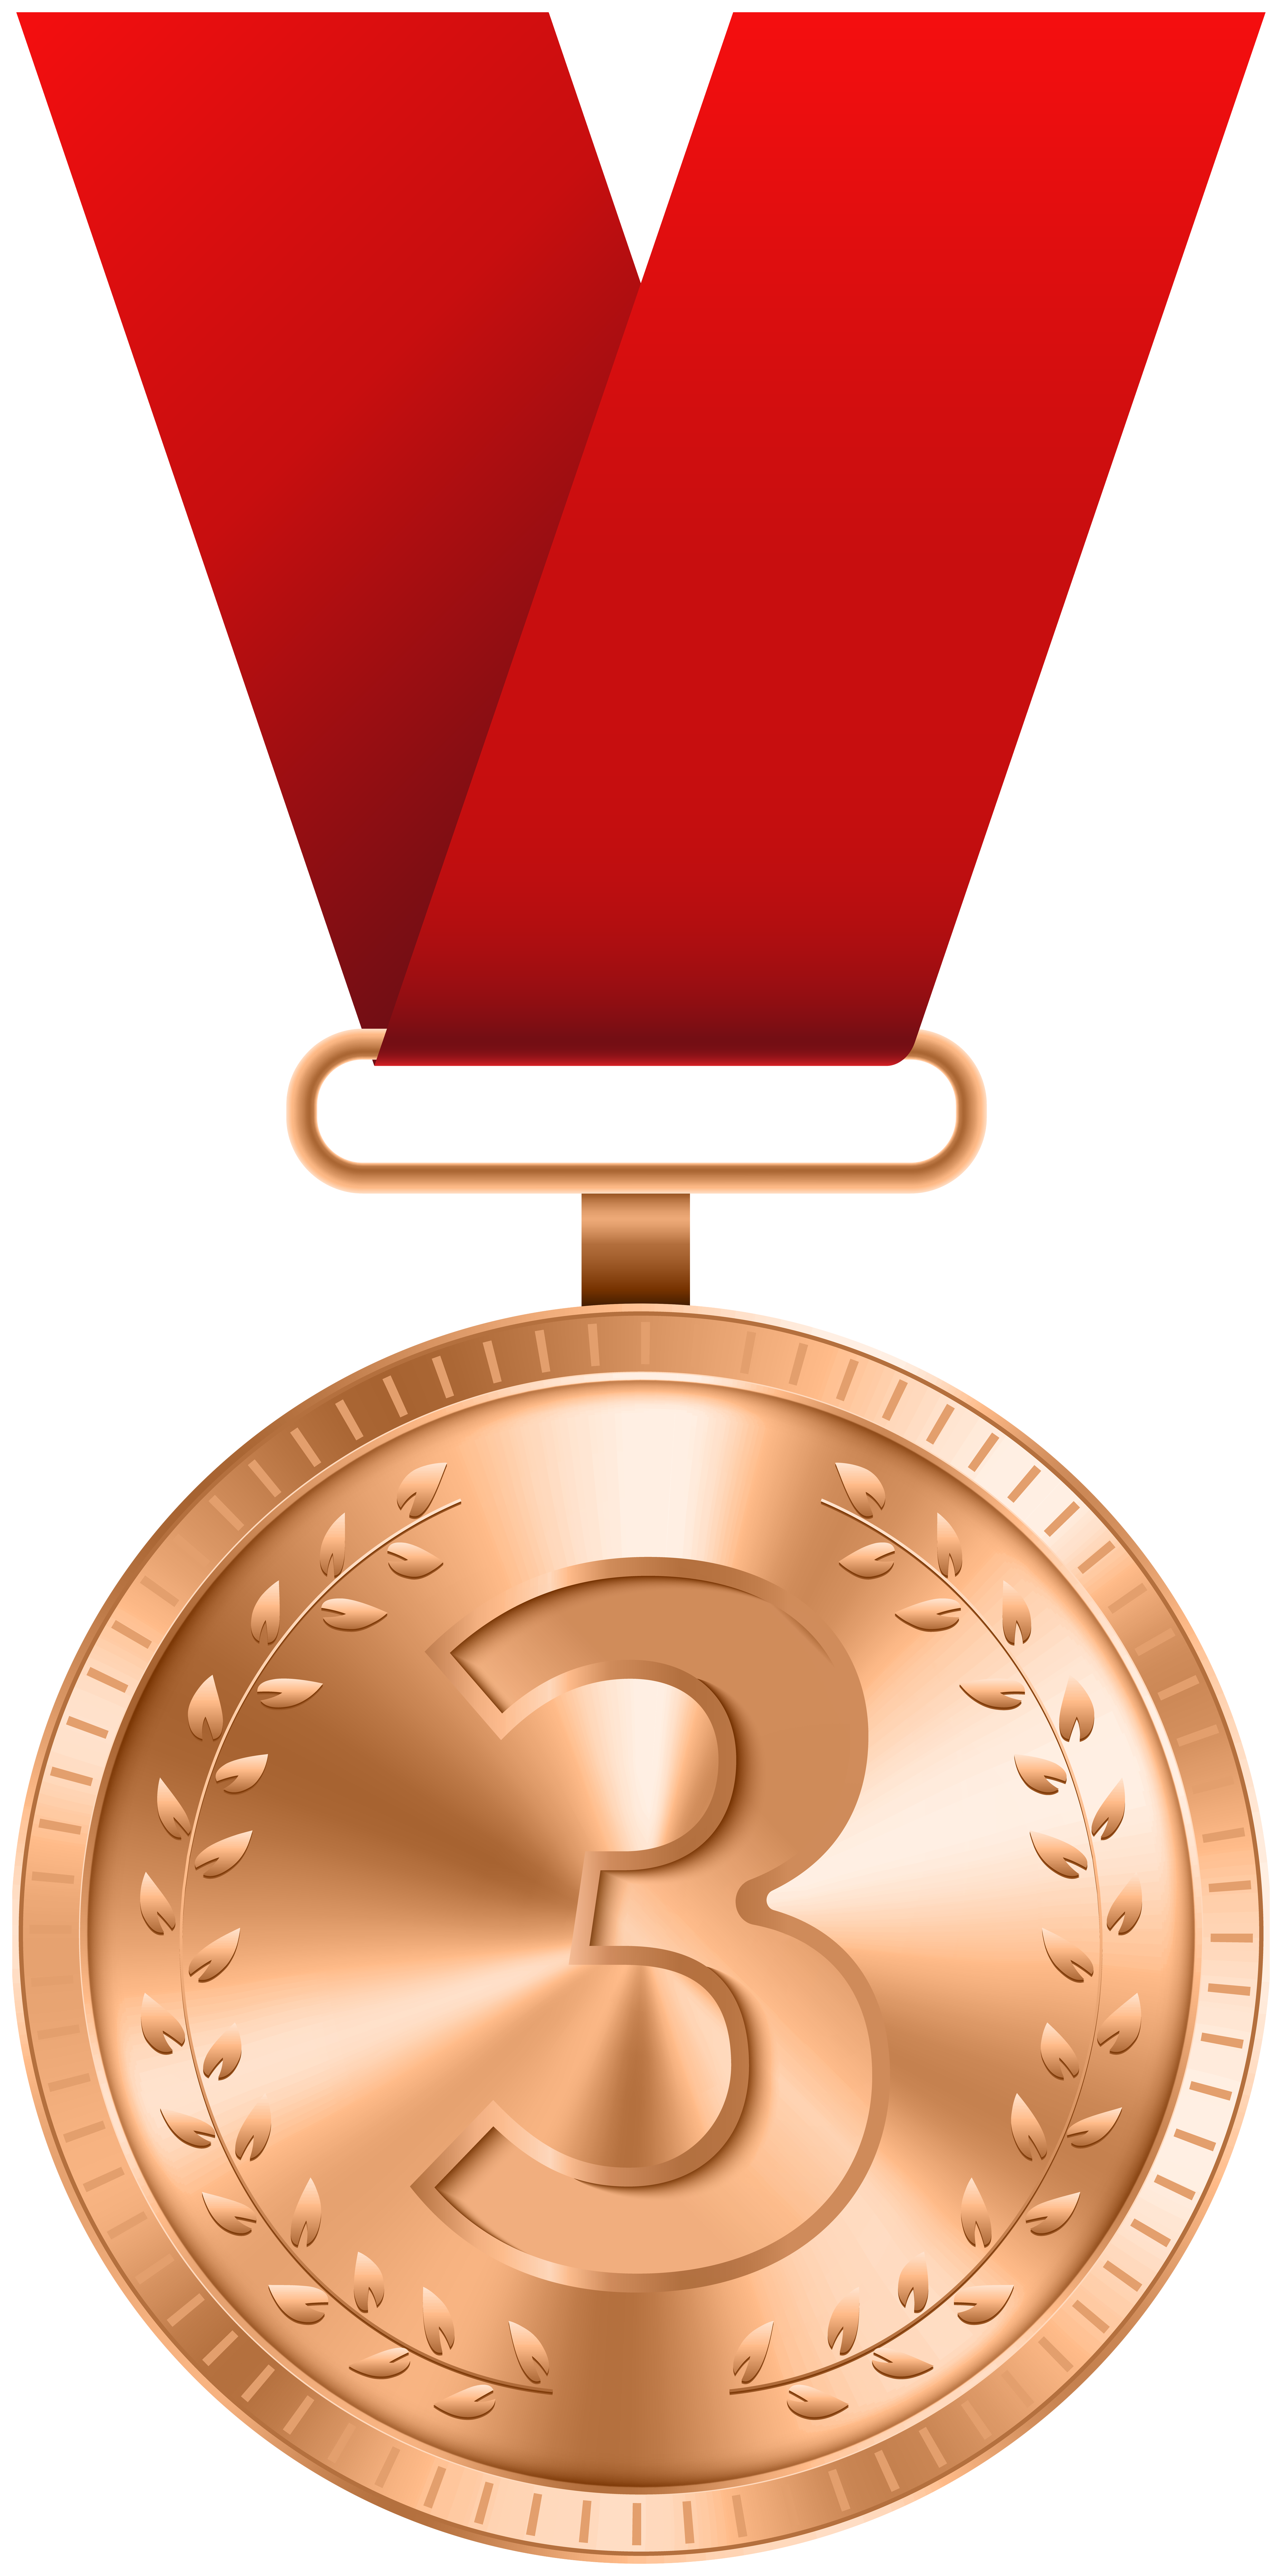 Bronze Medal PNG Clip Art Image.